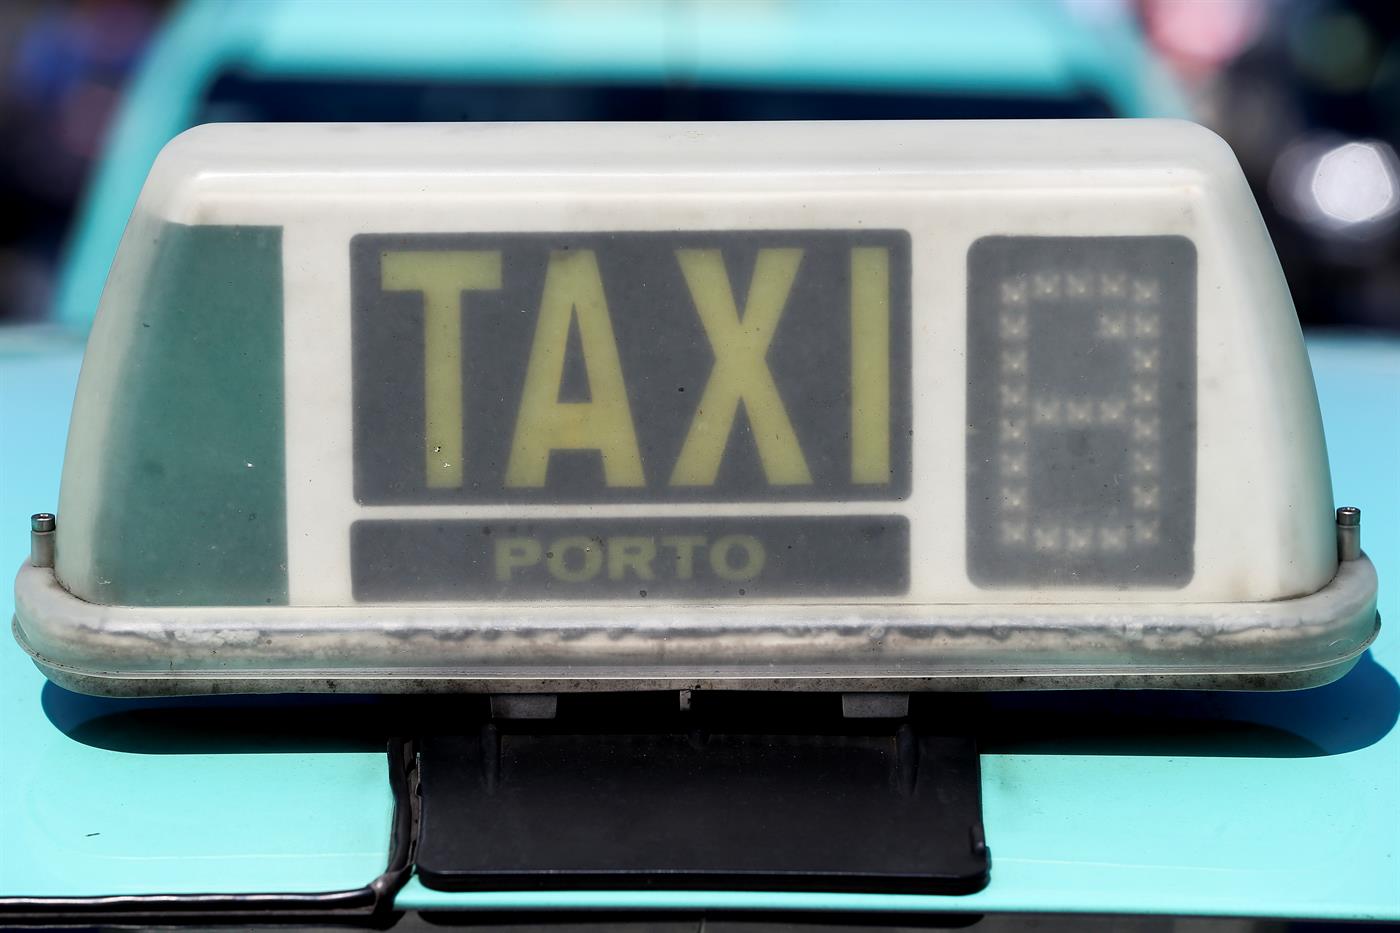 Passe Andante e Cartão de Refeição poderão vir a ser utilizados nos Táxis como meio de pagamento